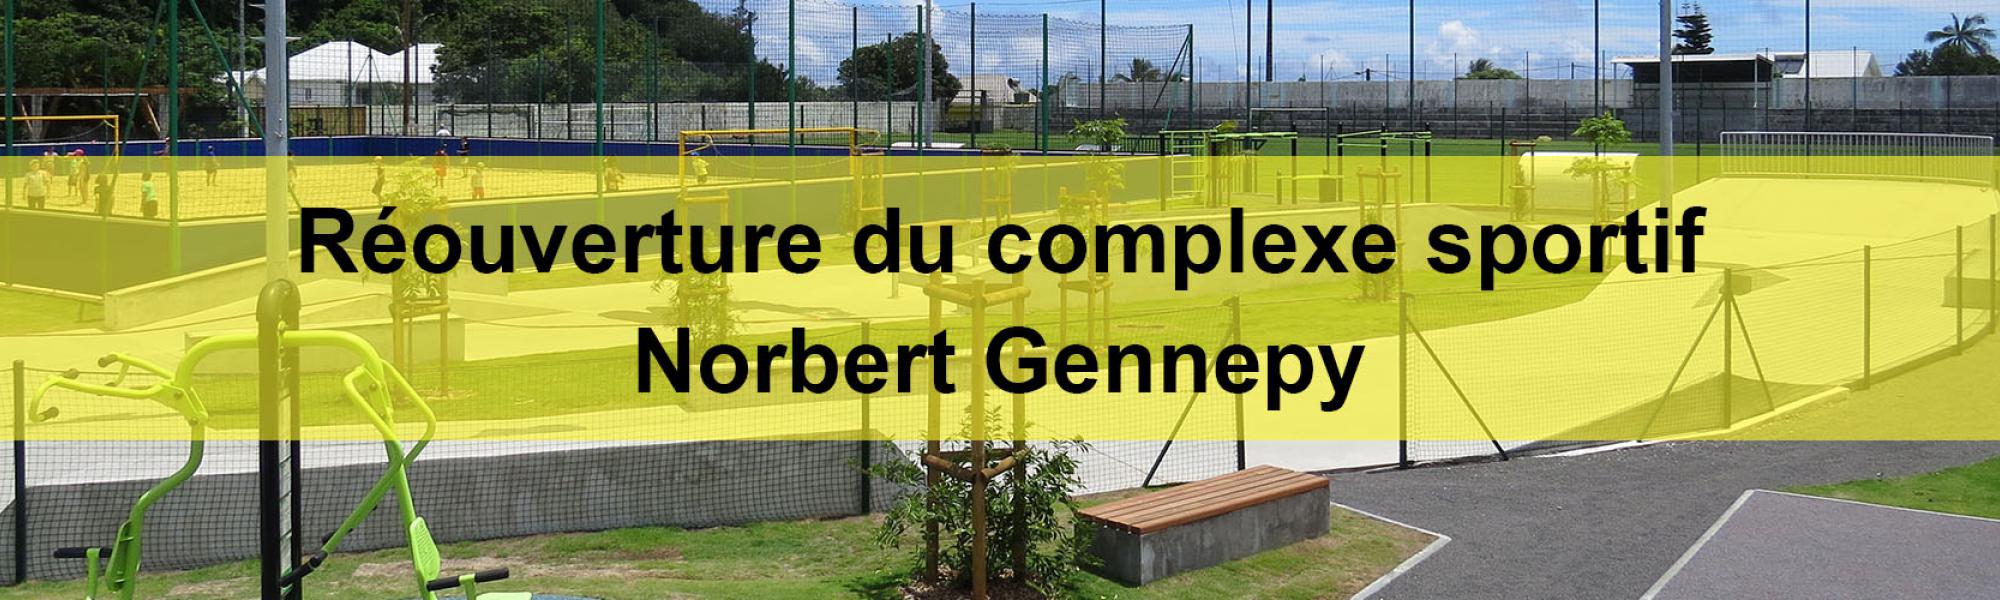 bandeau réouverture du complexe sportif Norbert Gennepy